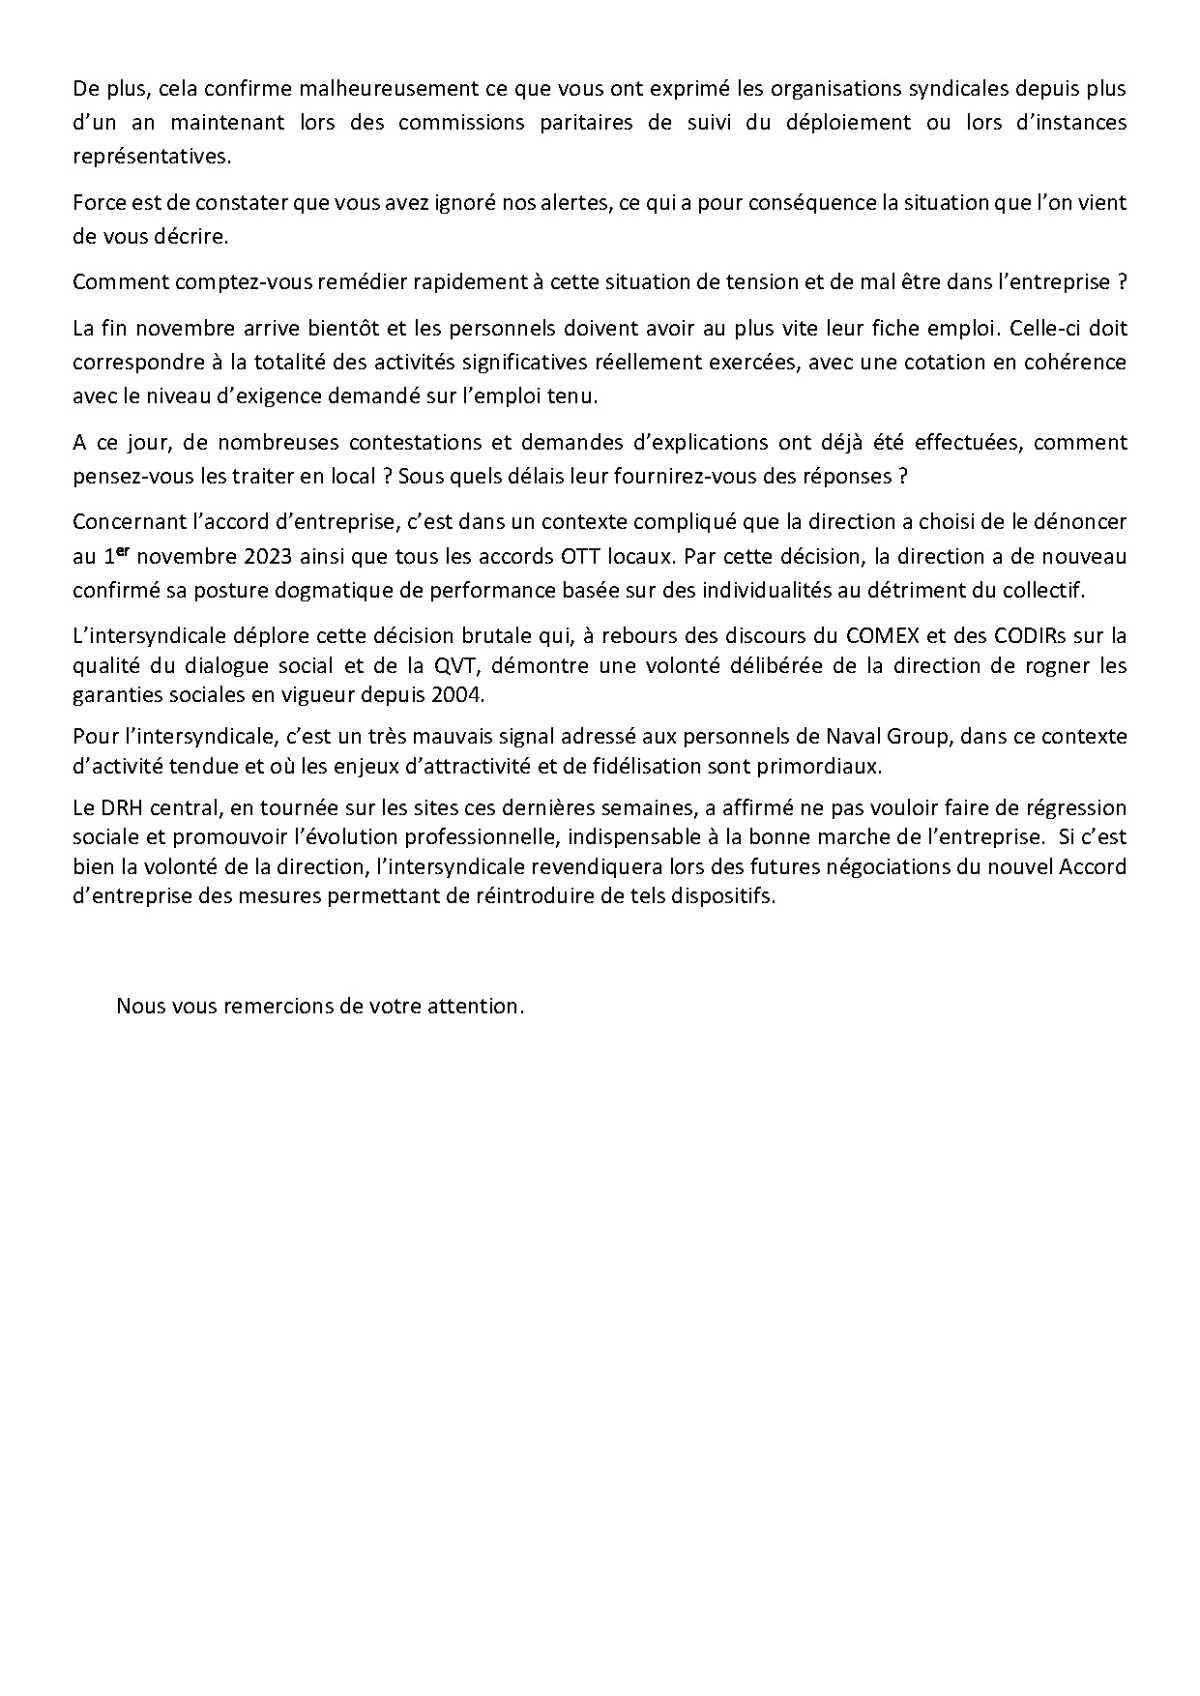 Réunion du 16 novembre 2023 - Déclaration liminaire Intersyndicale